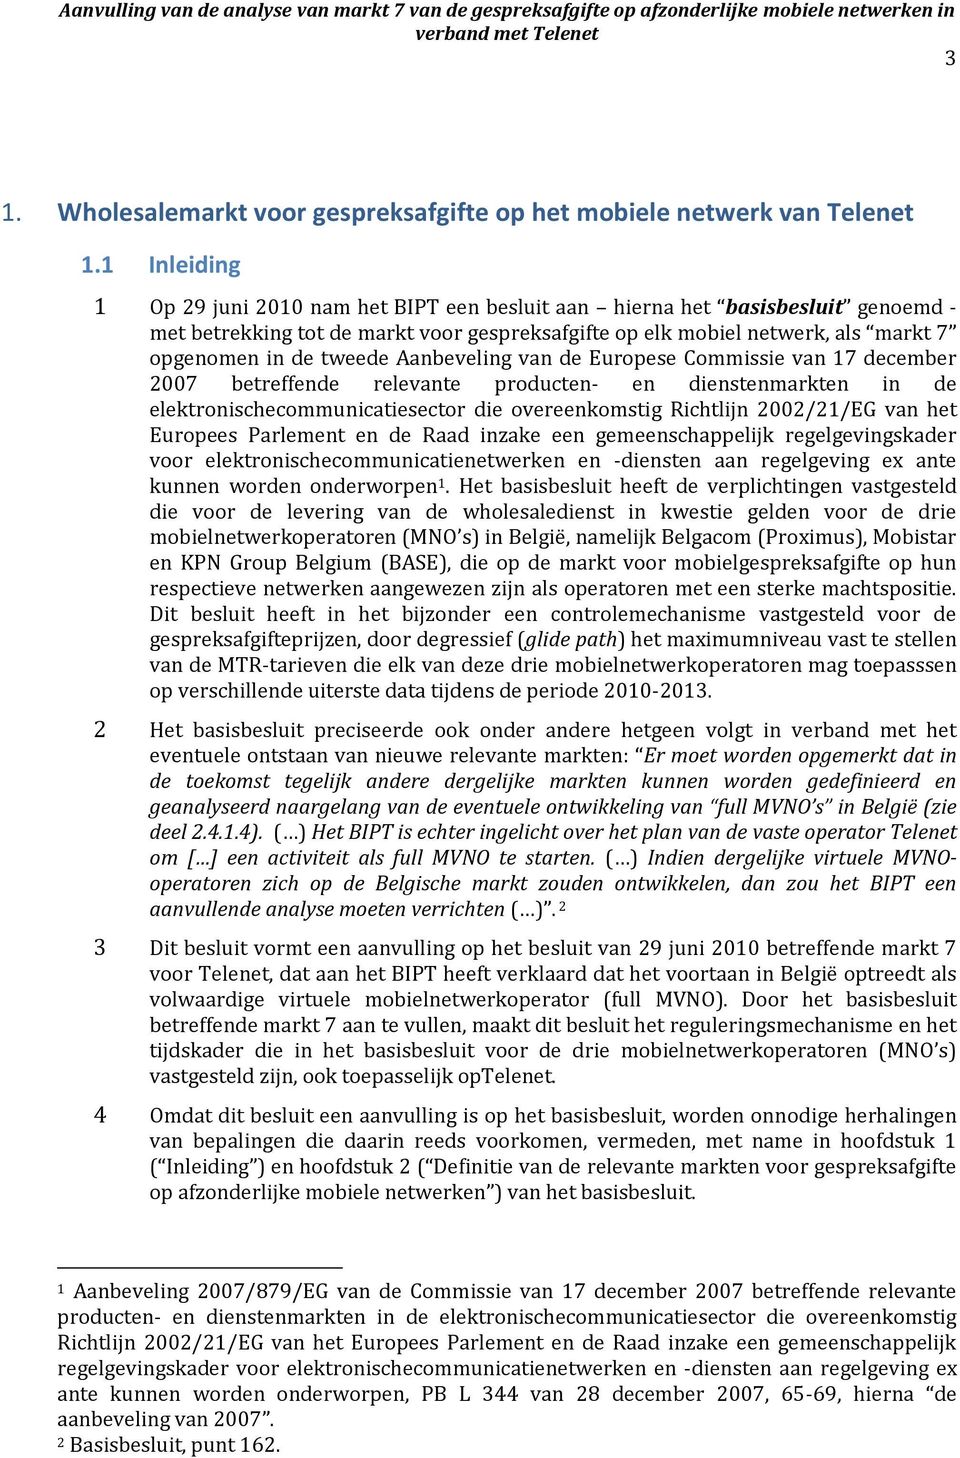 Aanbeveling van de Europese Commissie van 17 december 2007 betreffende relevante producten- en dienstenmarkten in de elektronischecommunicatiesector die overeenkomstig Richtlijn 2002/21/EG van het